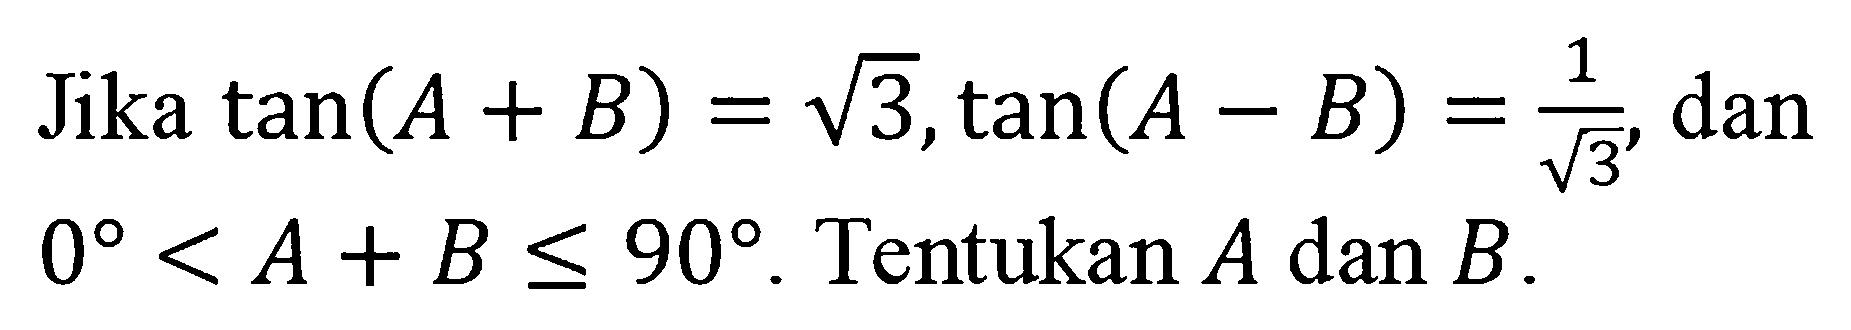 Jika tan(A+B)=akar(3), tan (A-B)=1/akar(3), dan 0<A+B<=90. Tentukan A dan B.